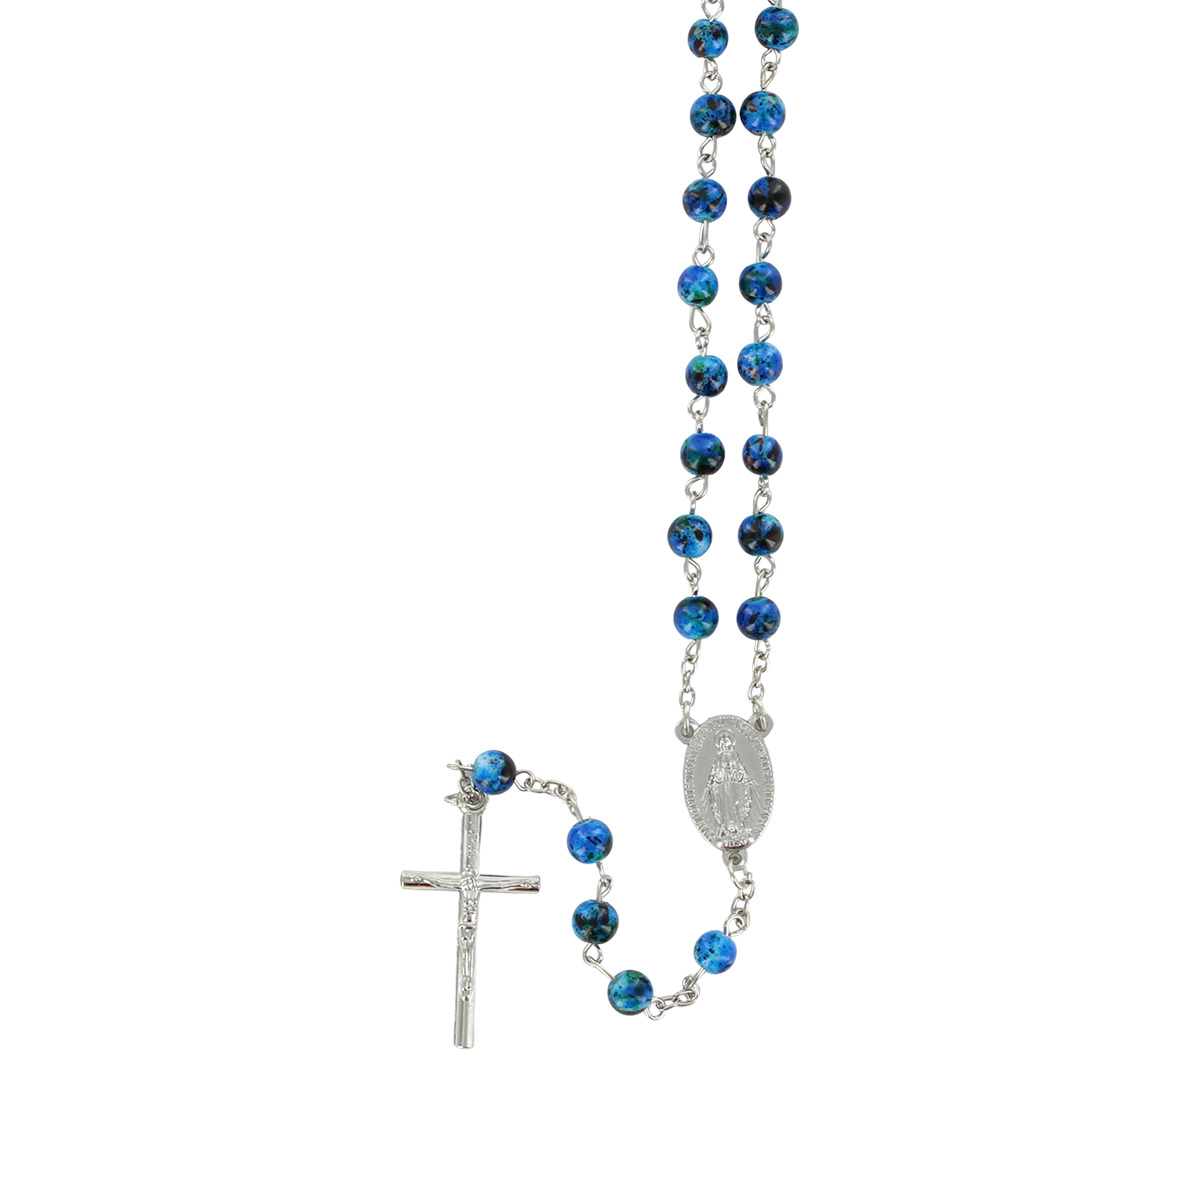 Chapelet grains tachetés ,Ø 7 mm, chaîne couleur argentée, longueur au cœur 34 cm, croix avec Christ.